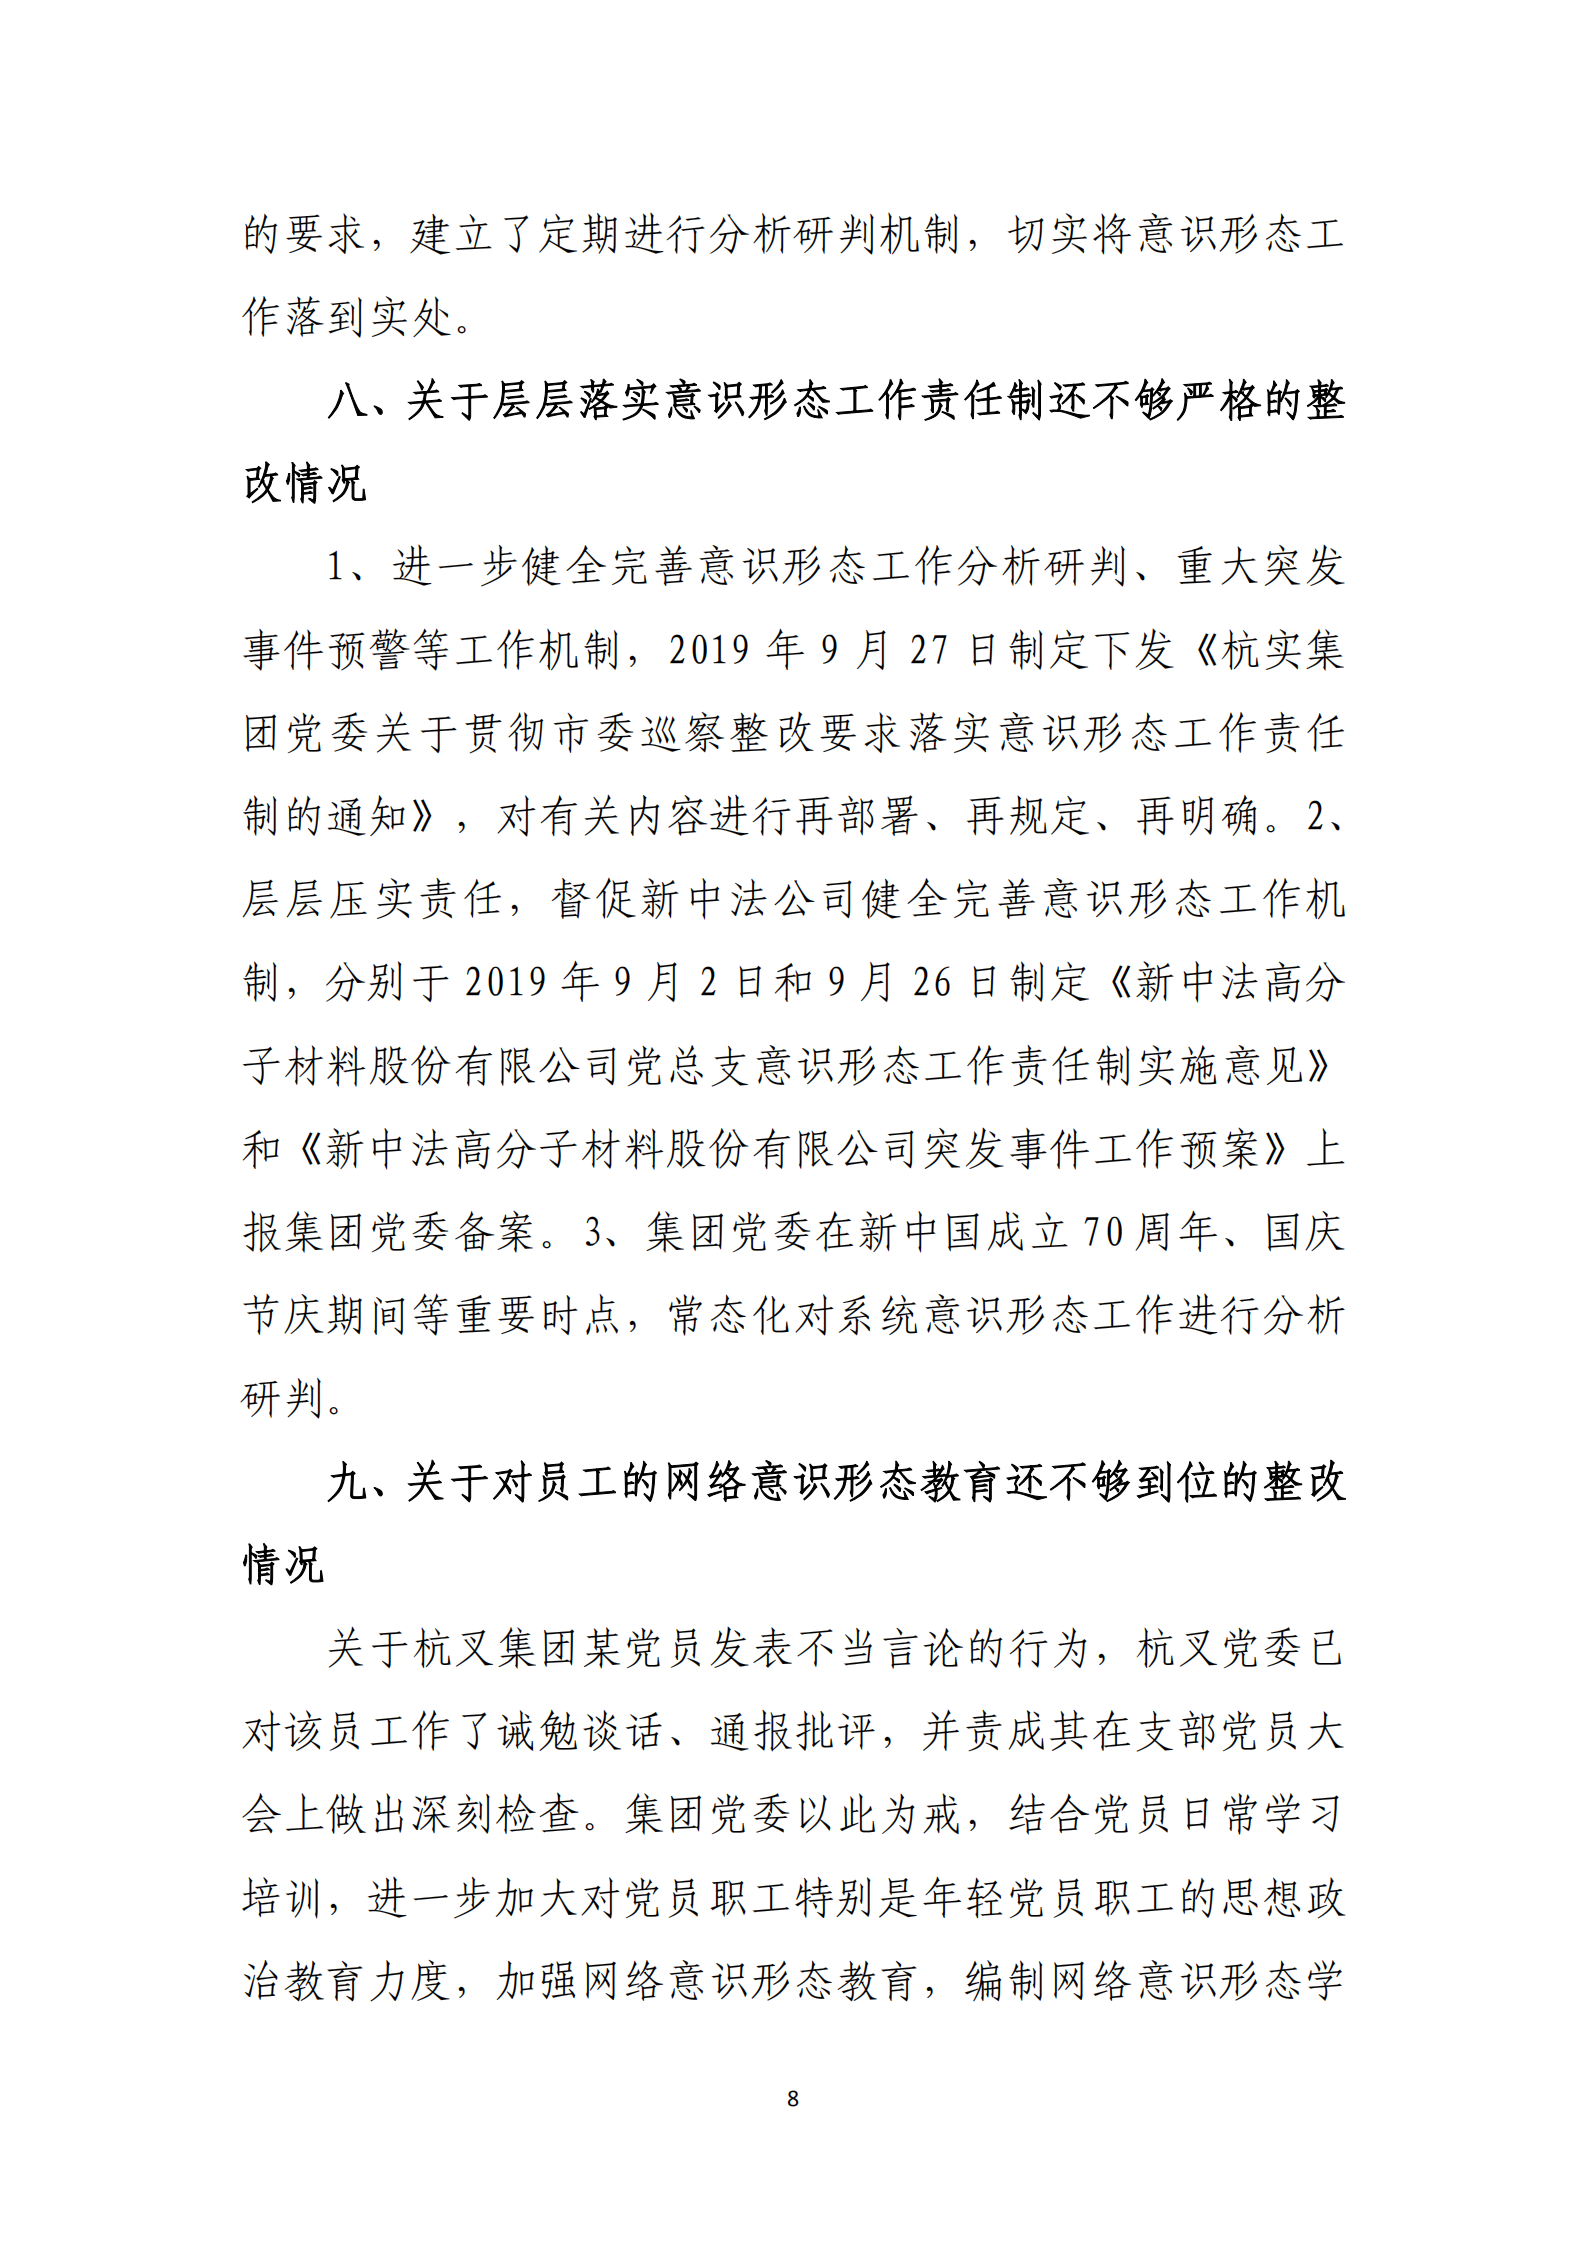 【体育365官方网站】中国有限公司党委关于巡察整改情况的通报_07.png